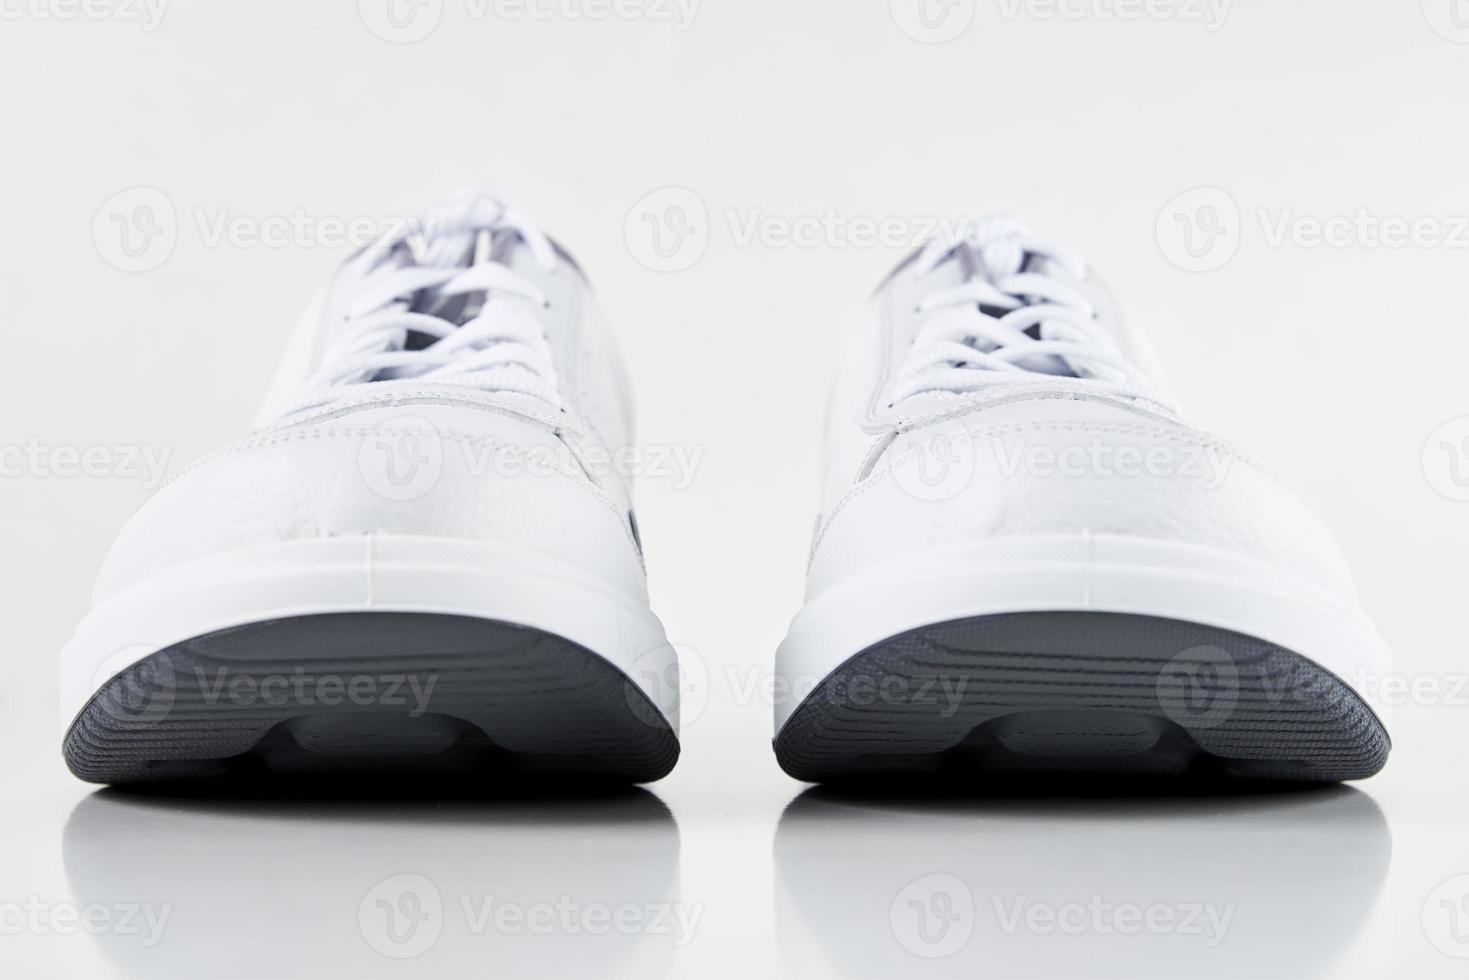 par de zapatillas masculinas blancas sobre fondo blanco aislado foto